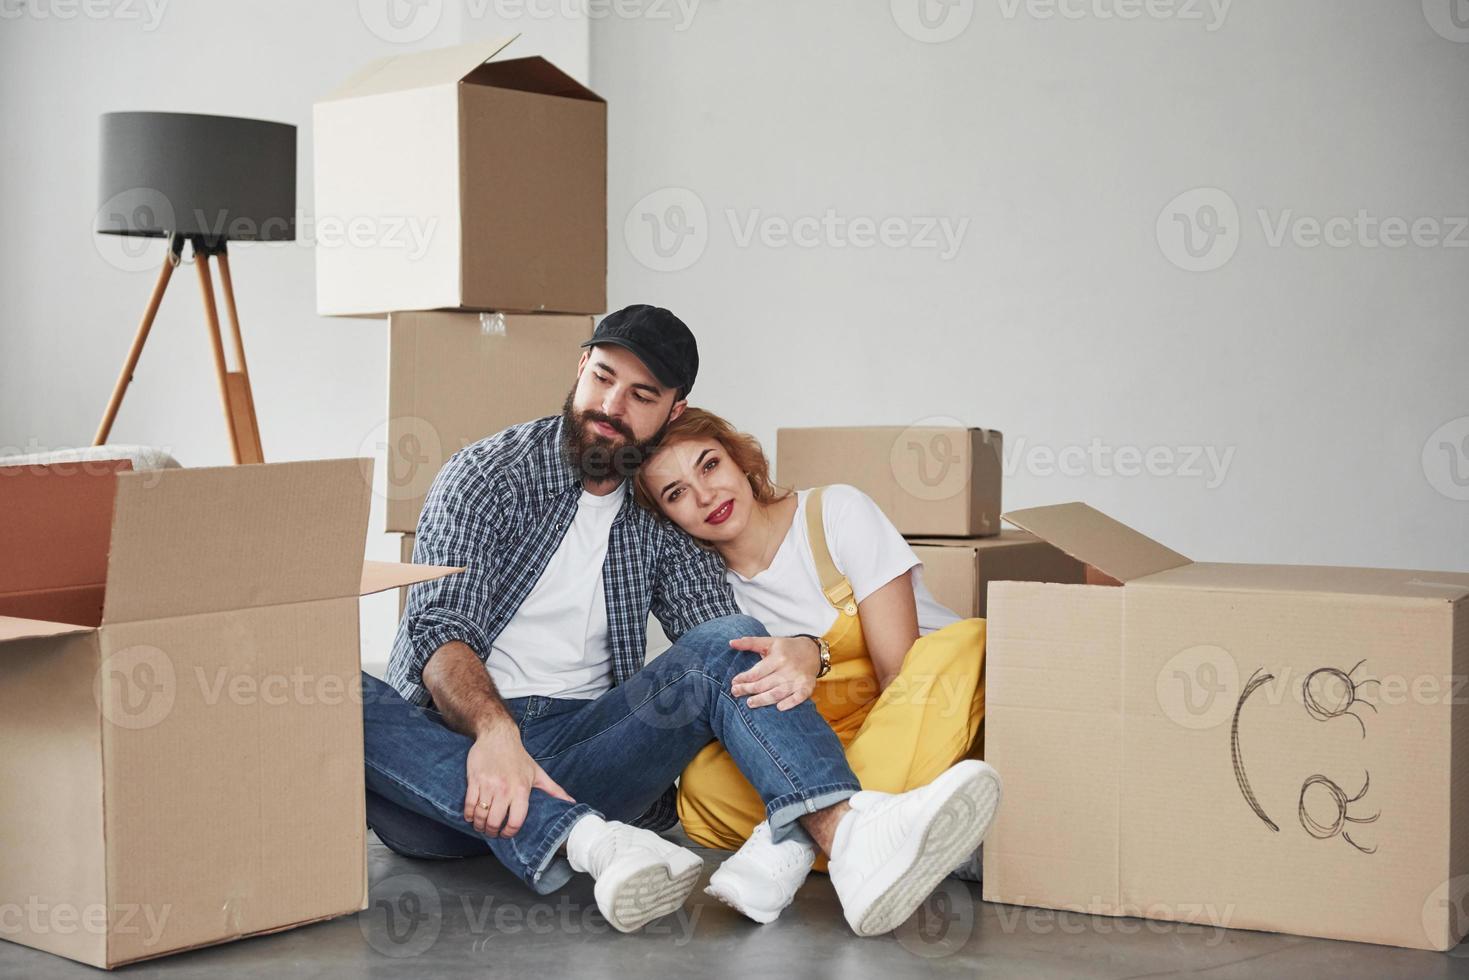 jobb nästan klart. lyckligt par tillsammans i sitt nya hus. föreställning om att flytta foto